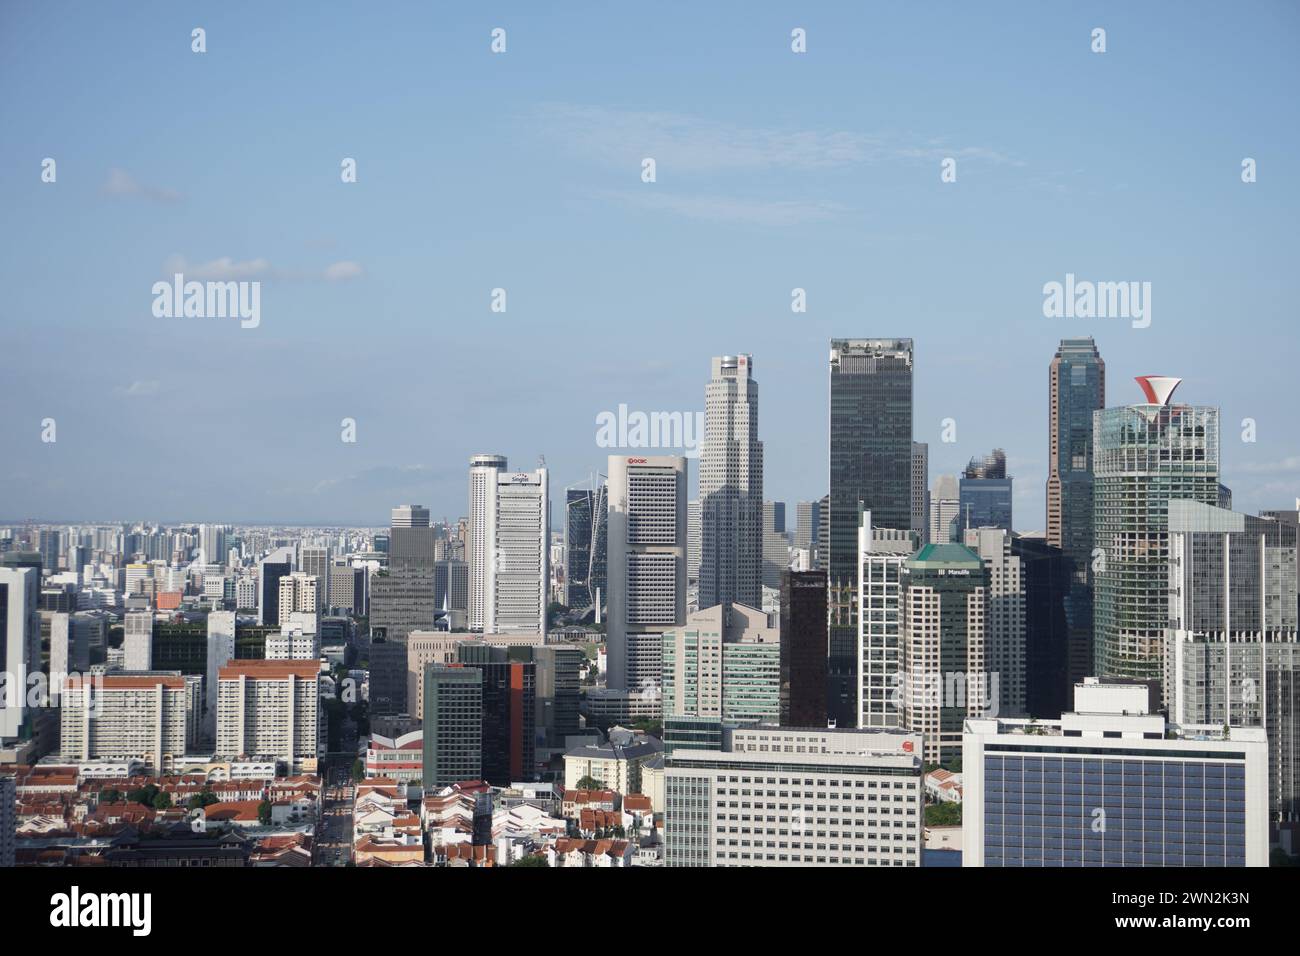 Le quartier des affaires de Singapour, centre financier mondial, abrite des bâtiments prestigieux comme plus Building au 20 Cecil Street, 049705, emblématique de ses buissons animés Banque D'Images